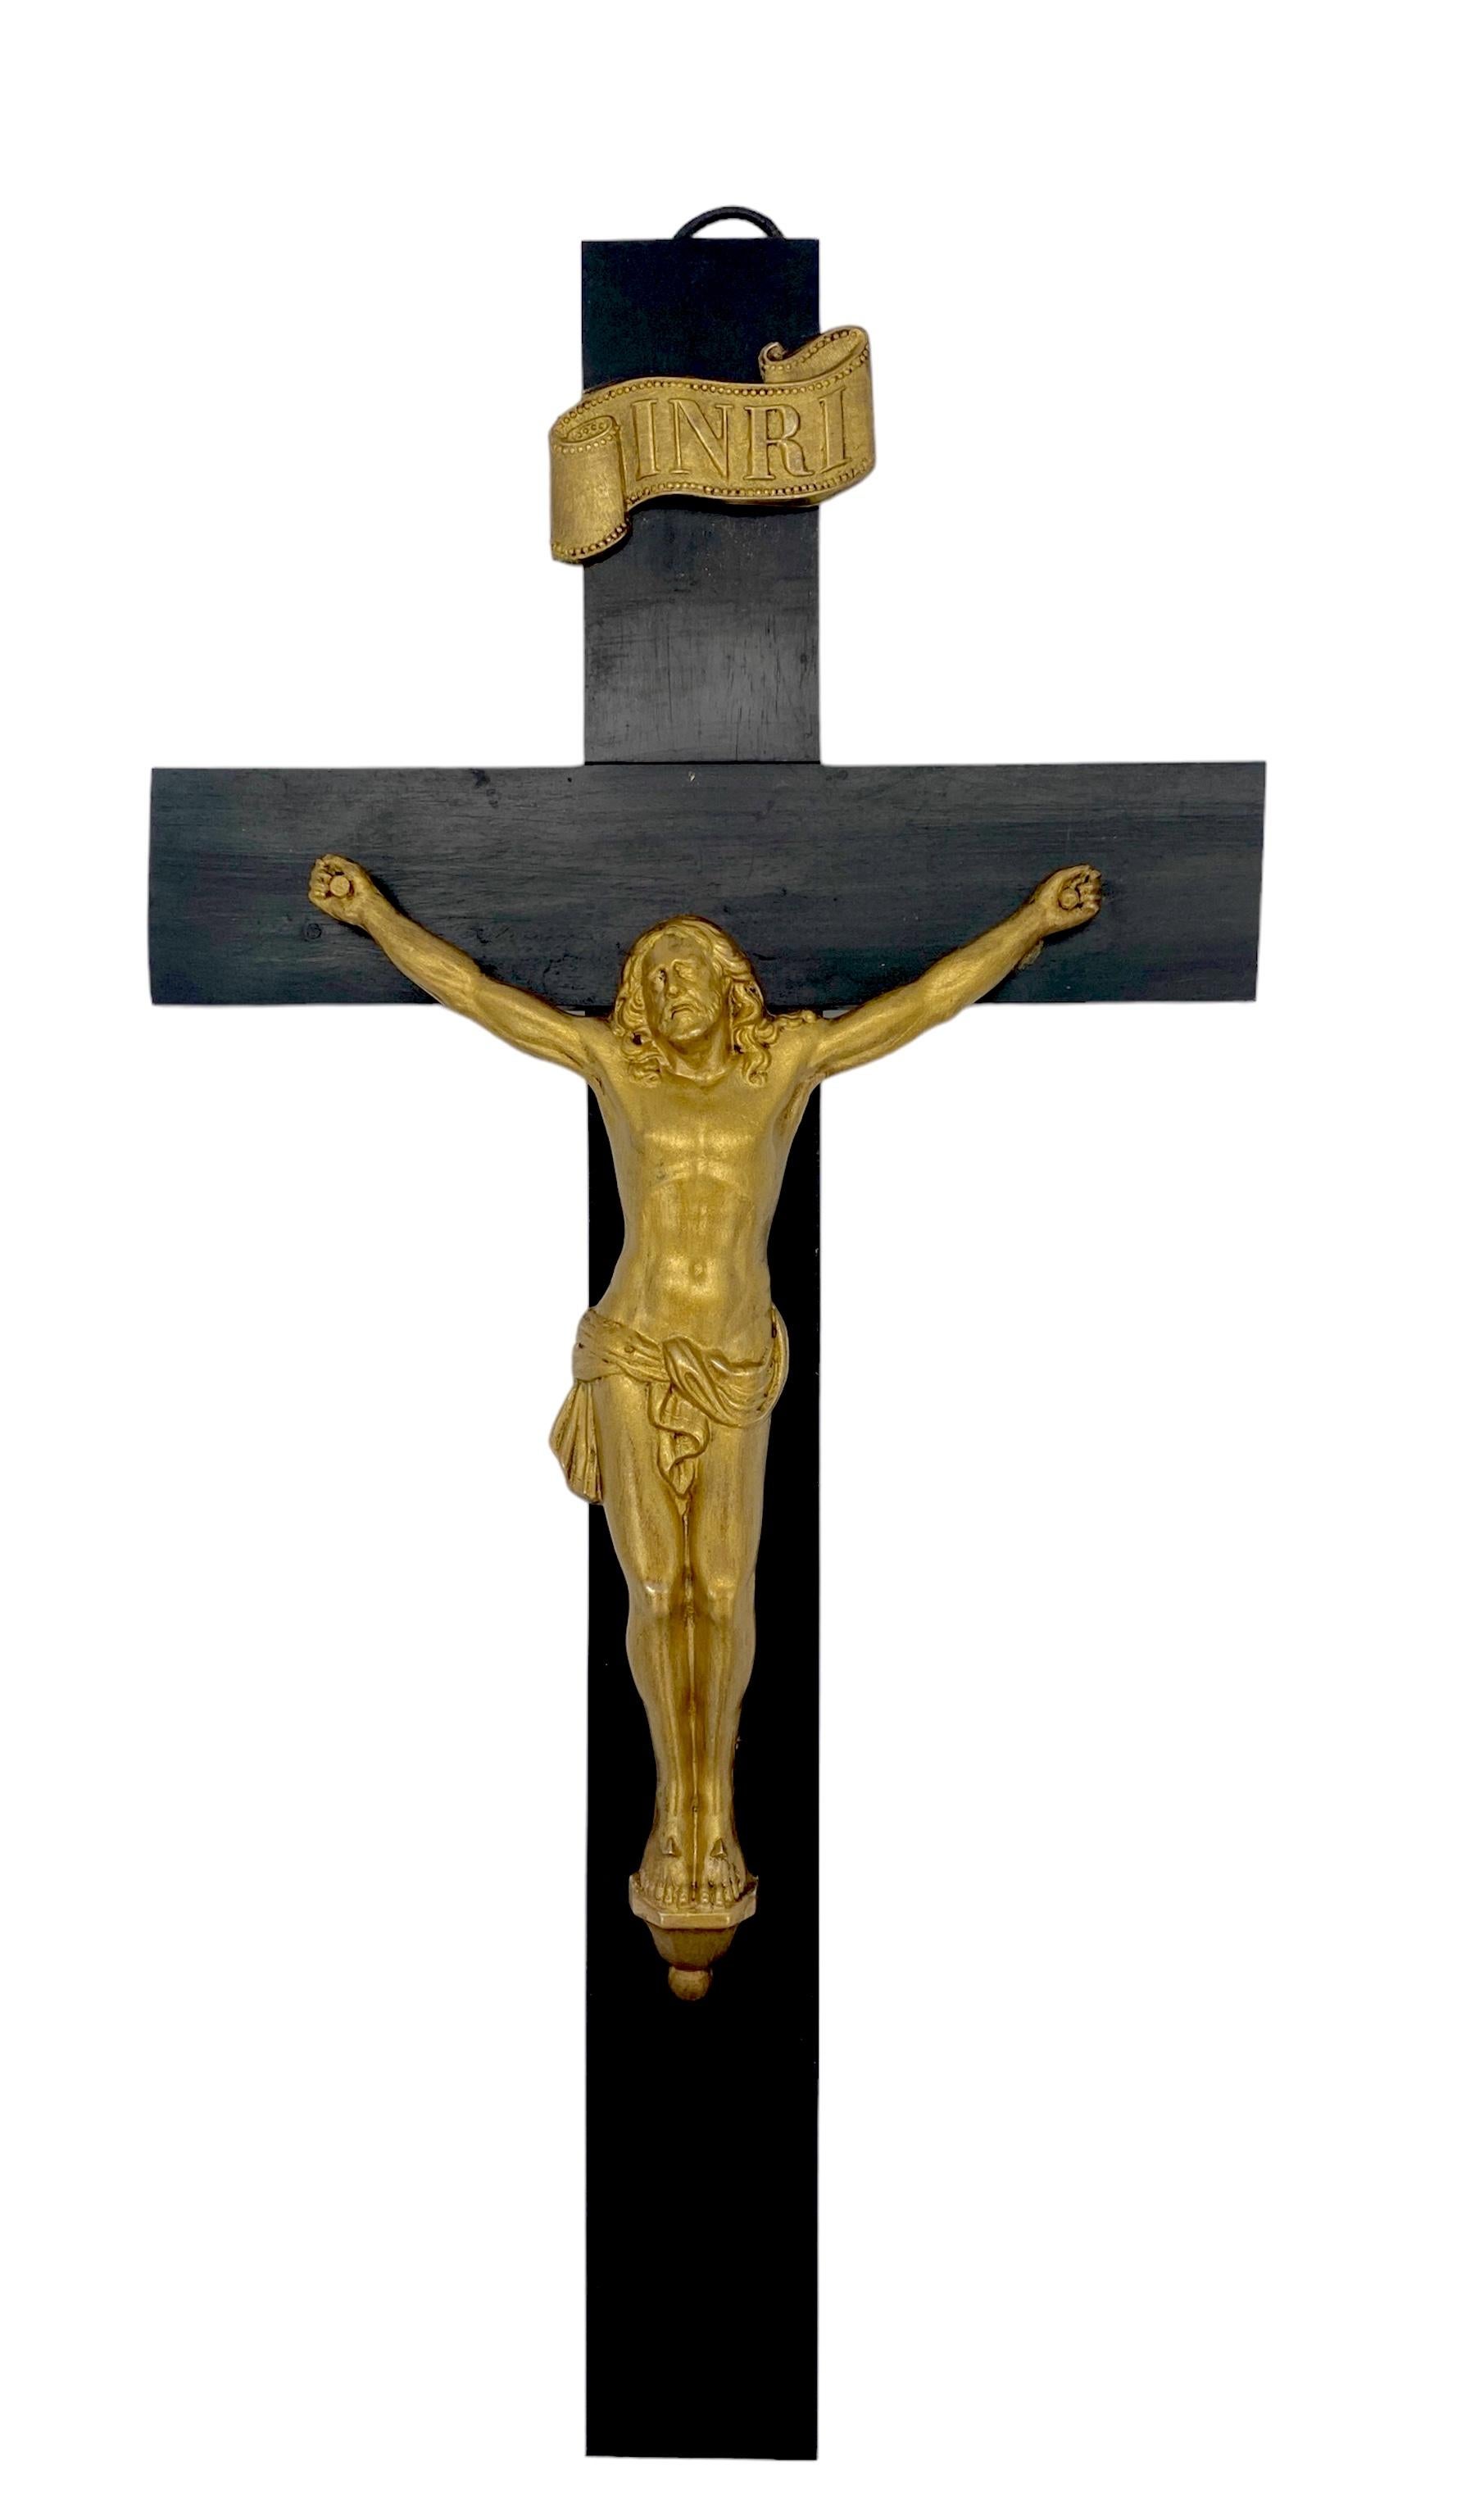 Croix/croix italienne vintage en bois ébénisé et métal doré
Italie, Circa 1950s 

Crucifix/Croix en bois ébonisé et métal doré, fabriqué en Italie dans les années 1950. Ce crucifix est de taille importante, mesurant 15 pouces de hauteur et 7,5